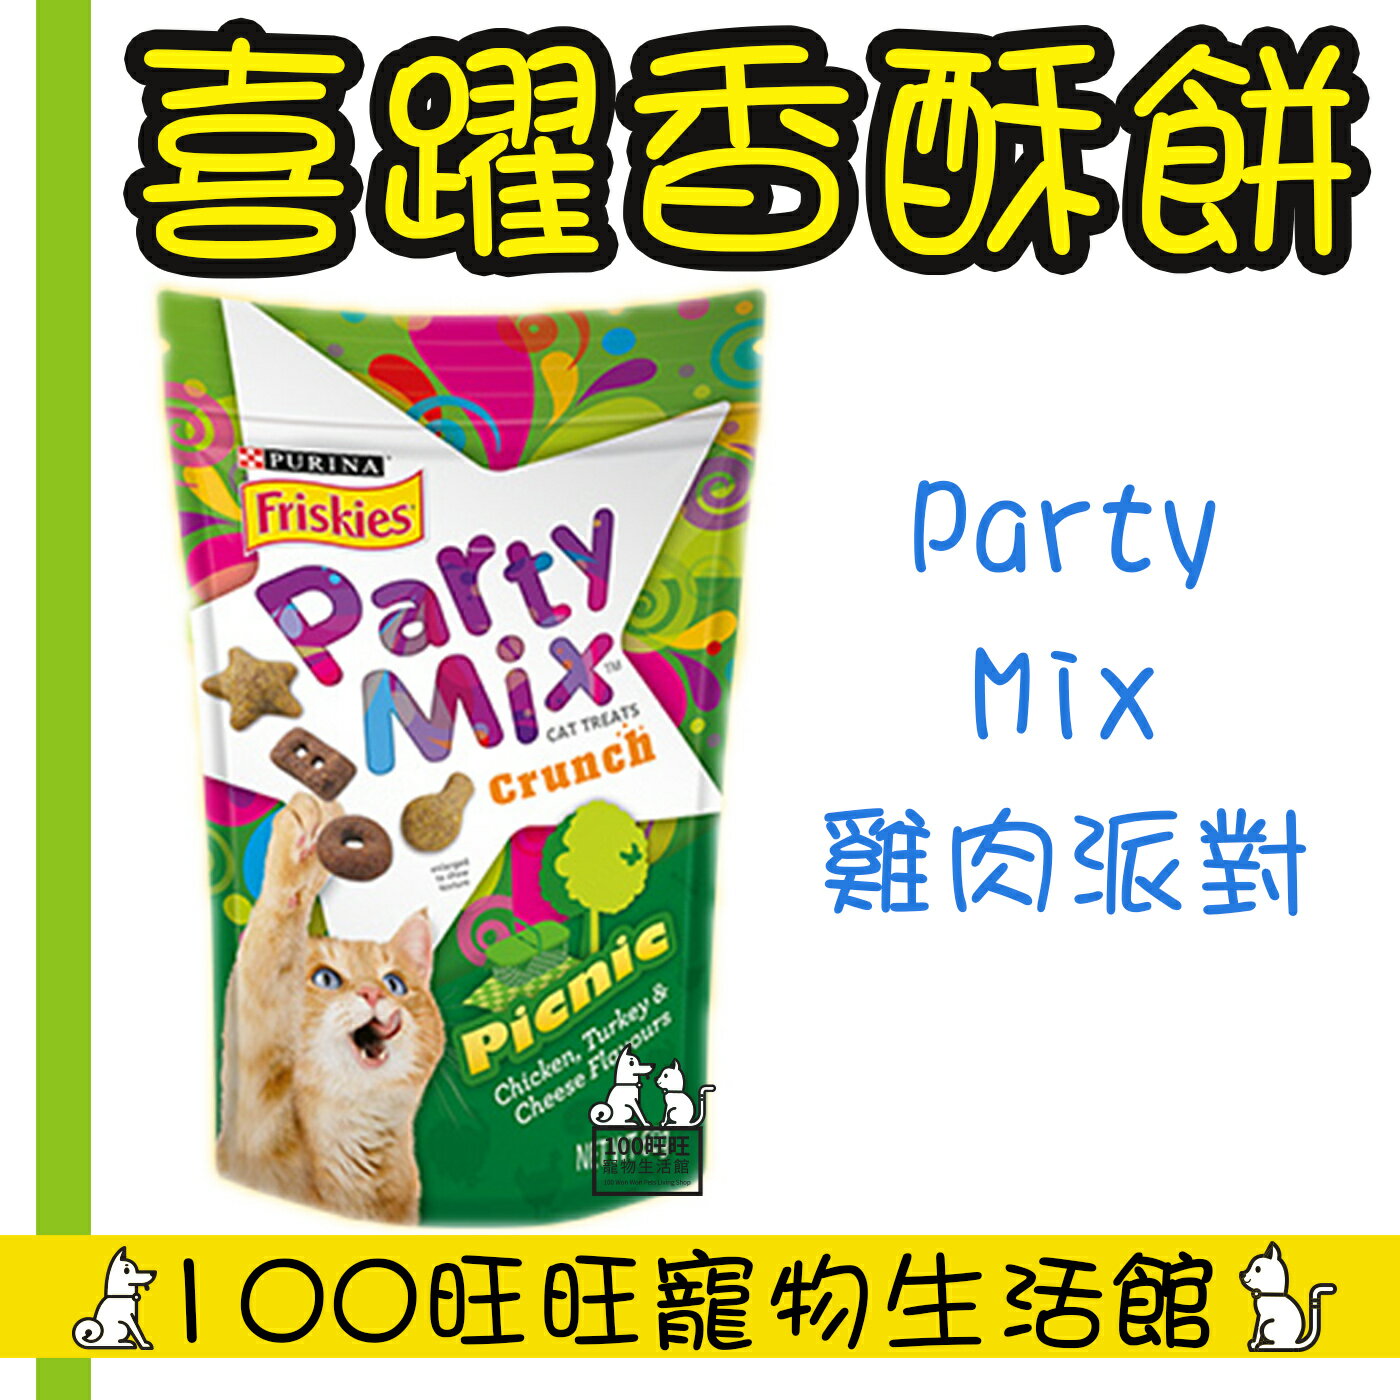 Friskies 喜躍 PartyMix 香酥餅 貓零食60g